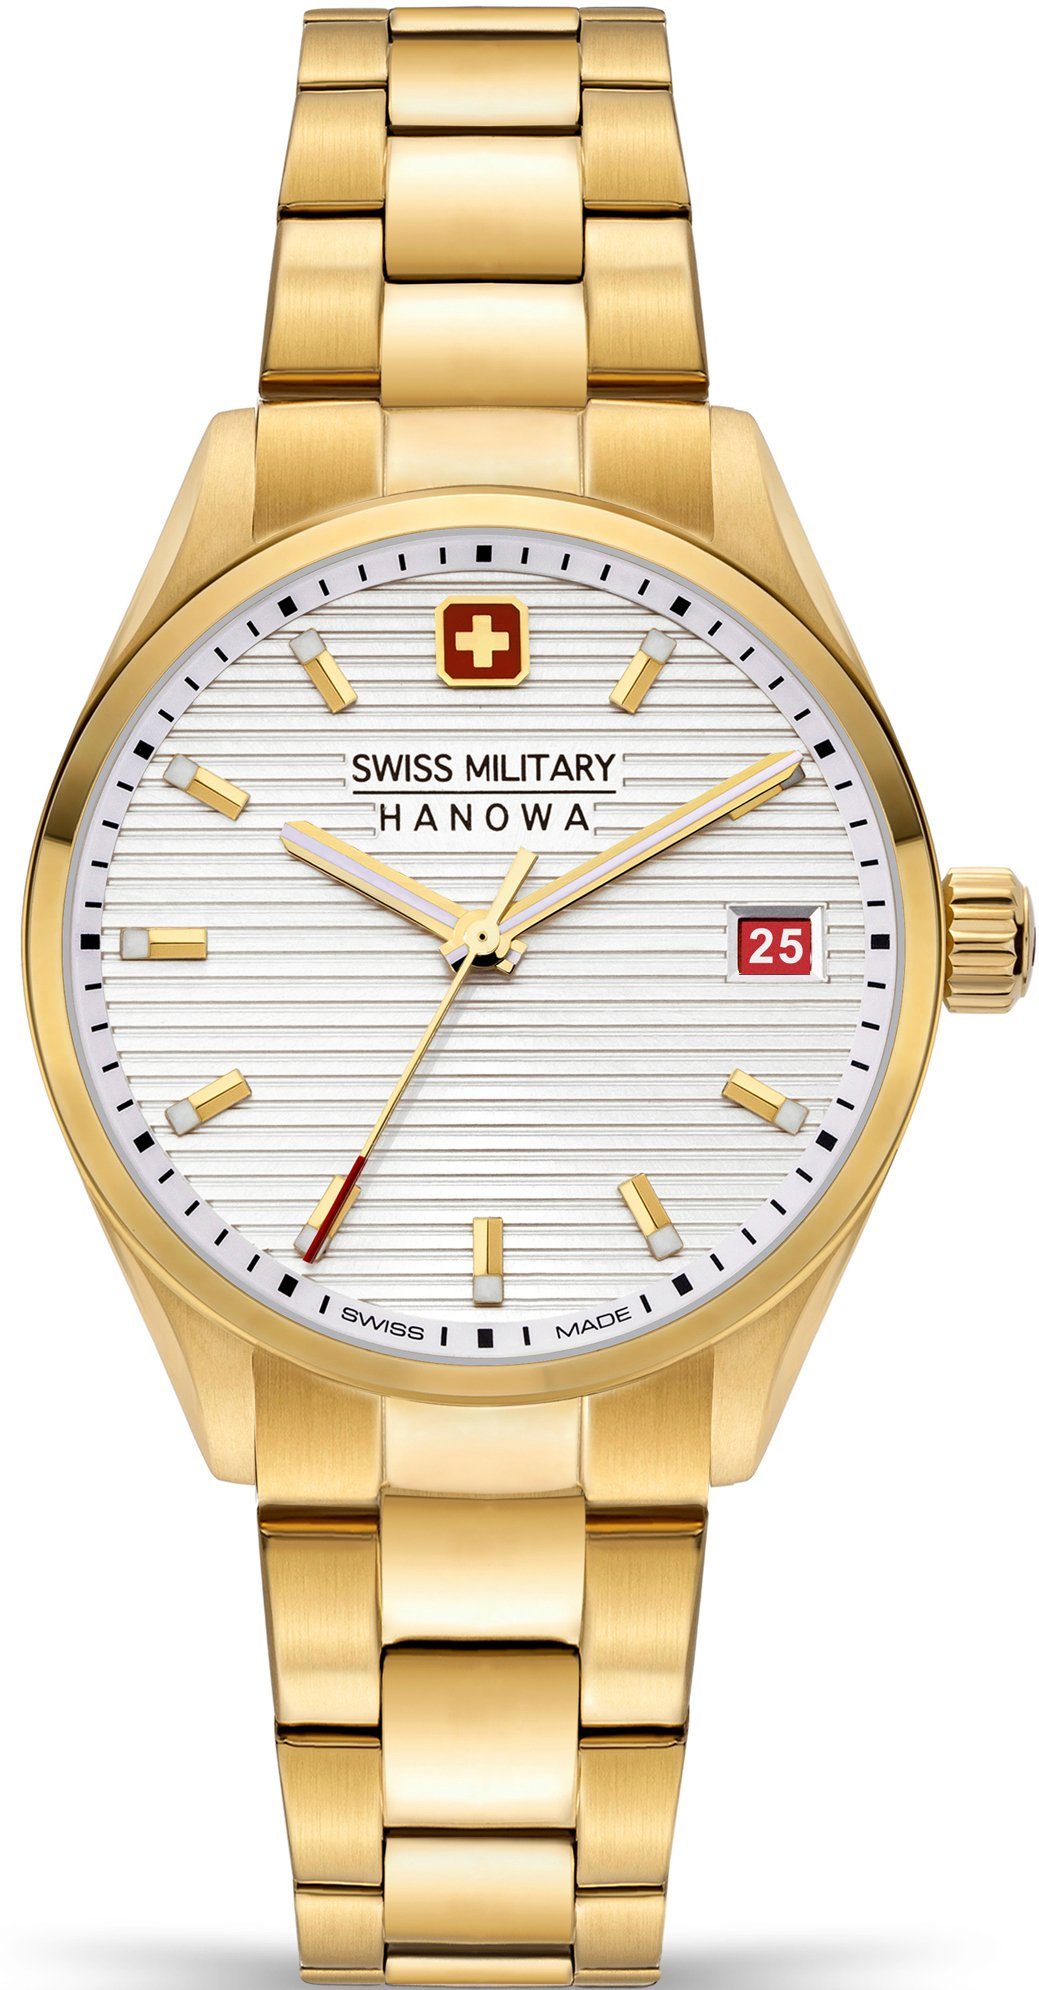 ROADRUNNER Hanowa Silber Uhr SMWLH2200210 Schweizer LADY, Military Swiss